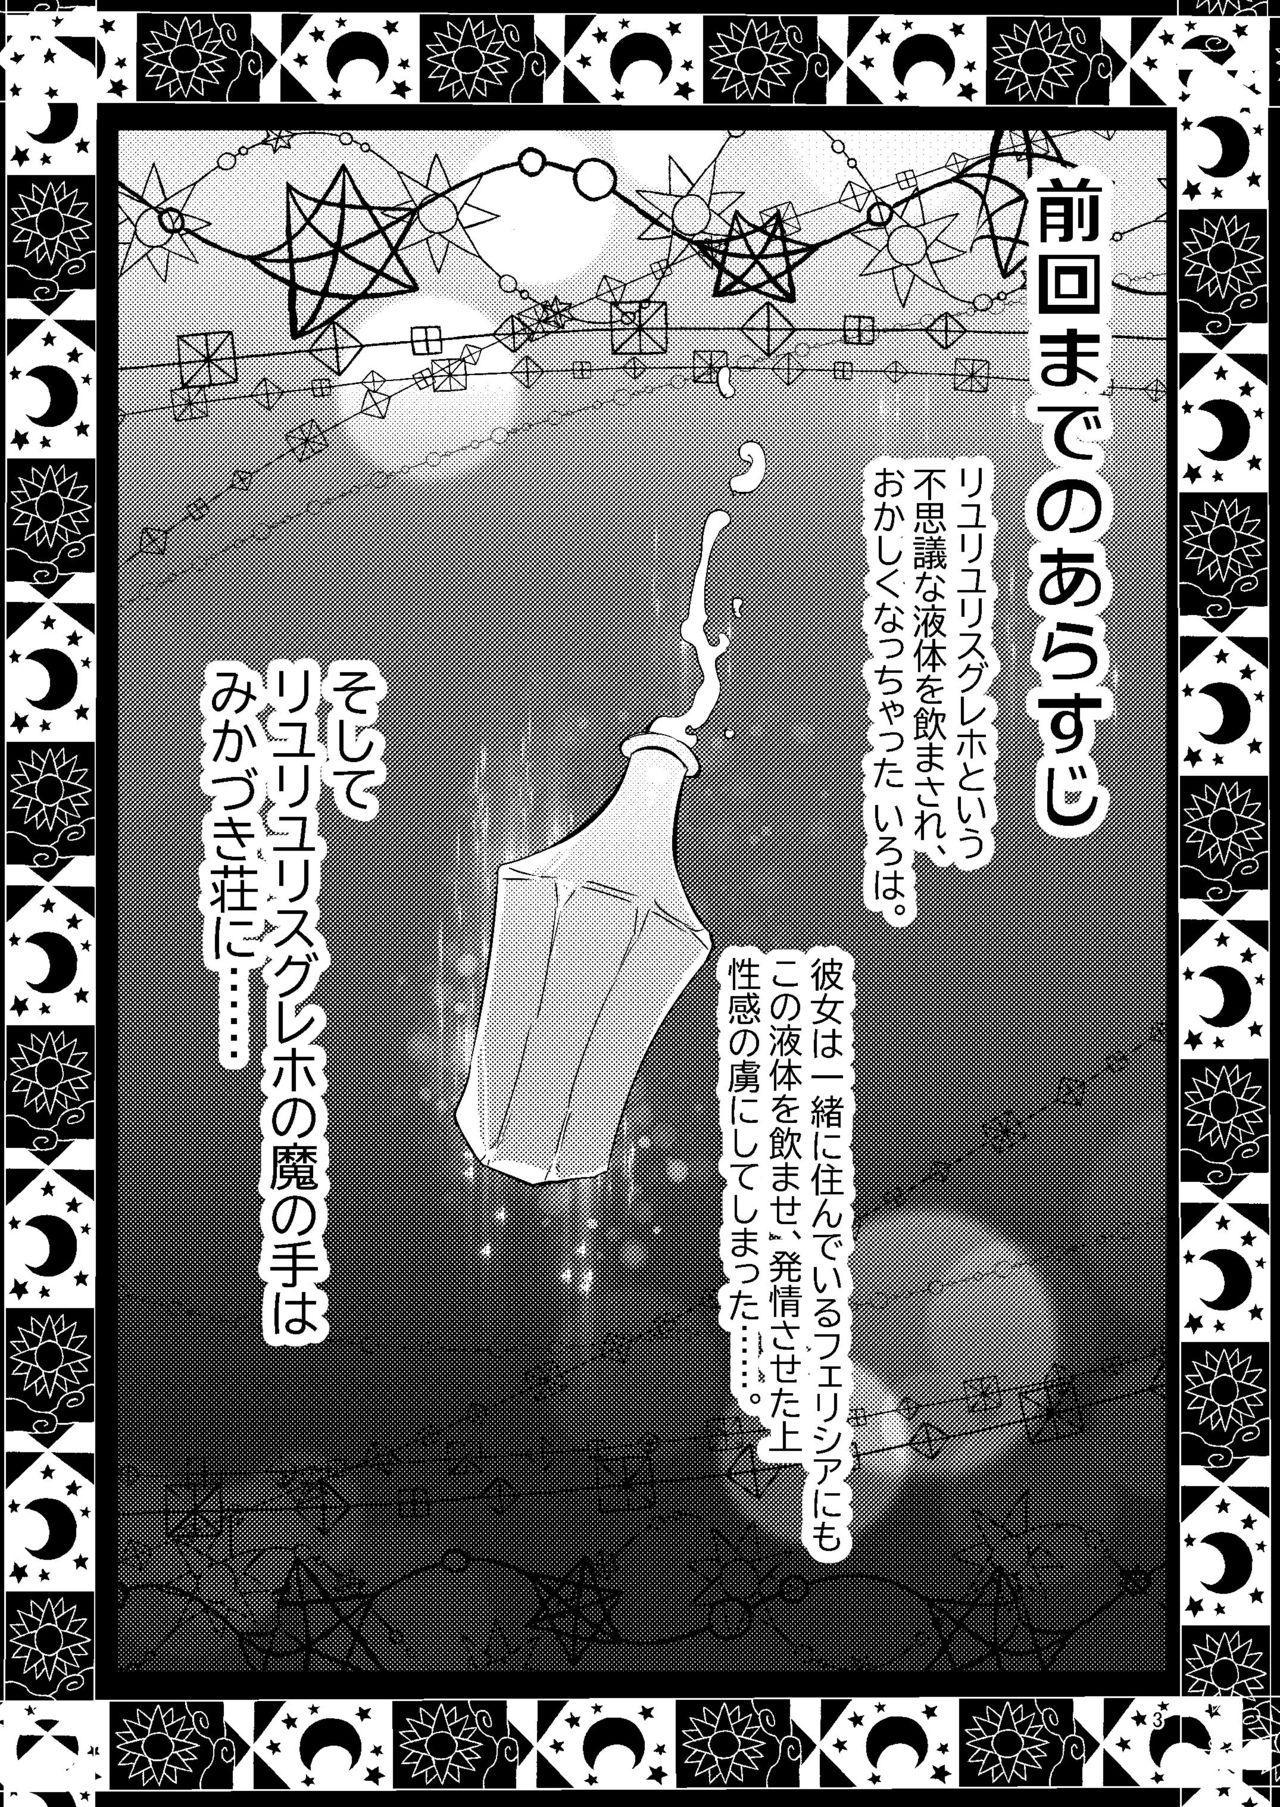 Big Black Dick Riyuriyu Risugureho no Uwasa 3 - Puella magi madoka magica side story magia record Arrecha - Page 2